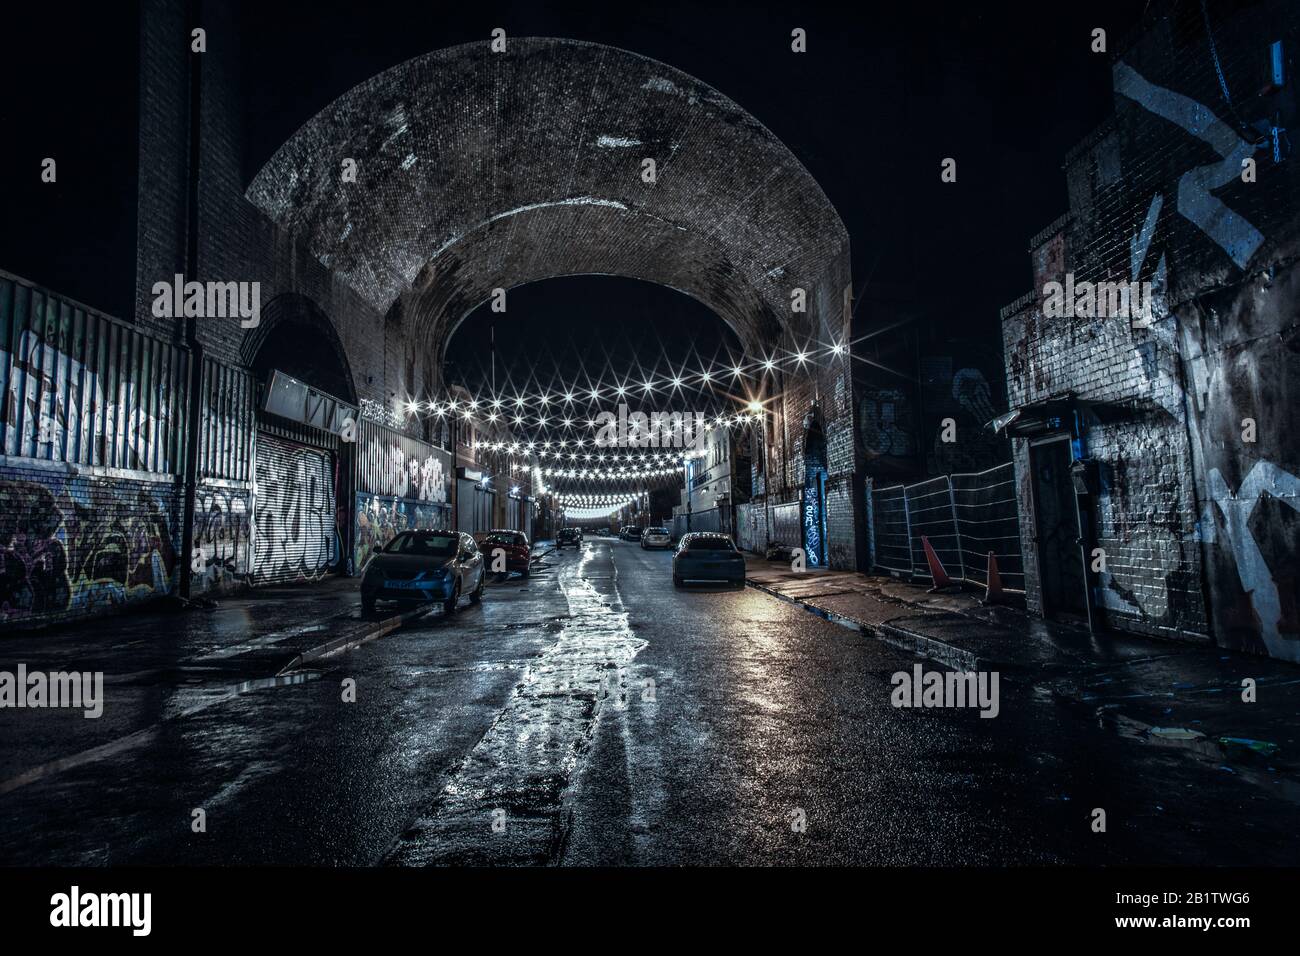 Digbeth en Birmingham, Reino Unido por la noche mostrando el detalle arquitectónico original y el arte callejero Foto de stock